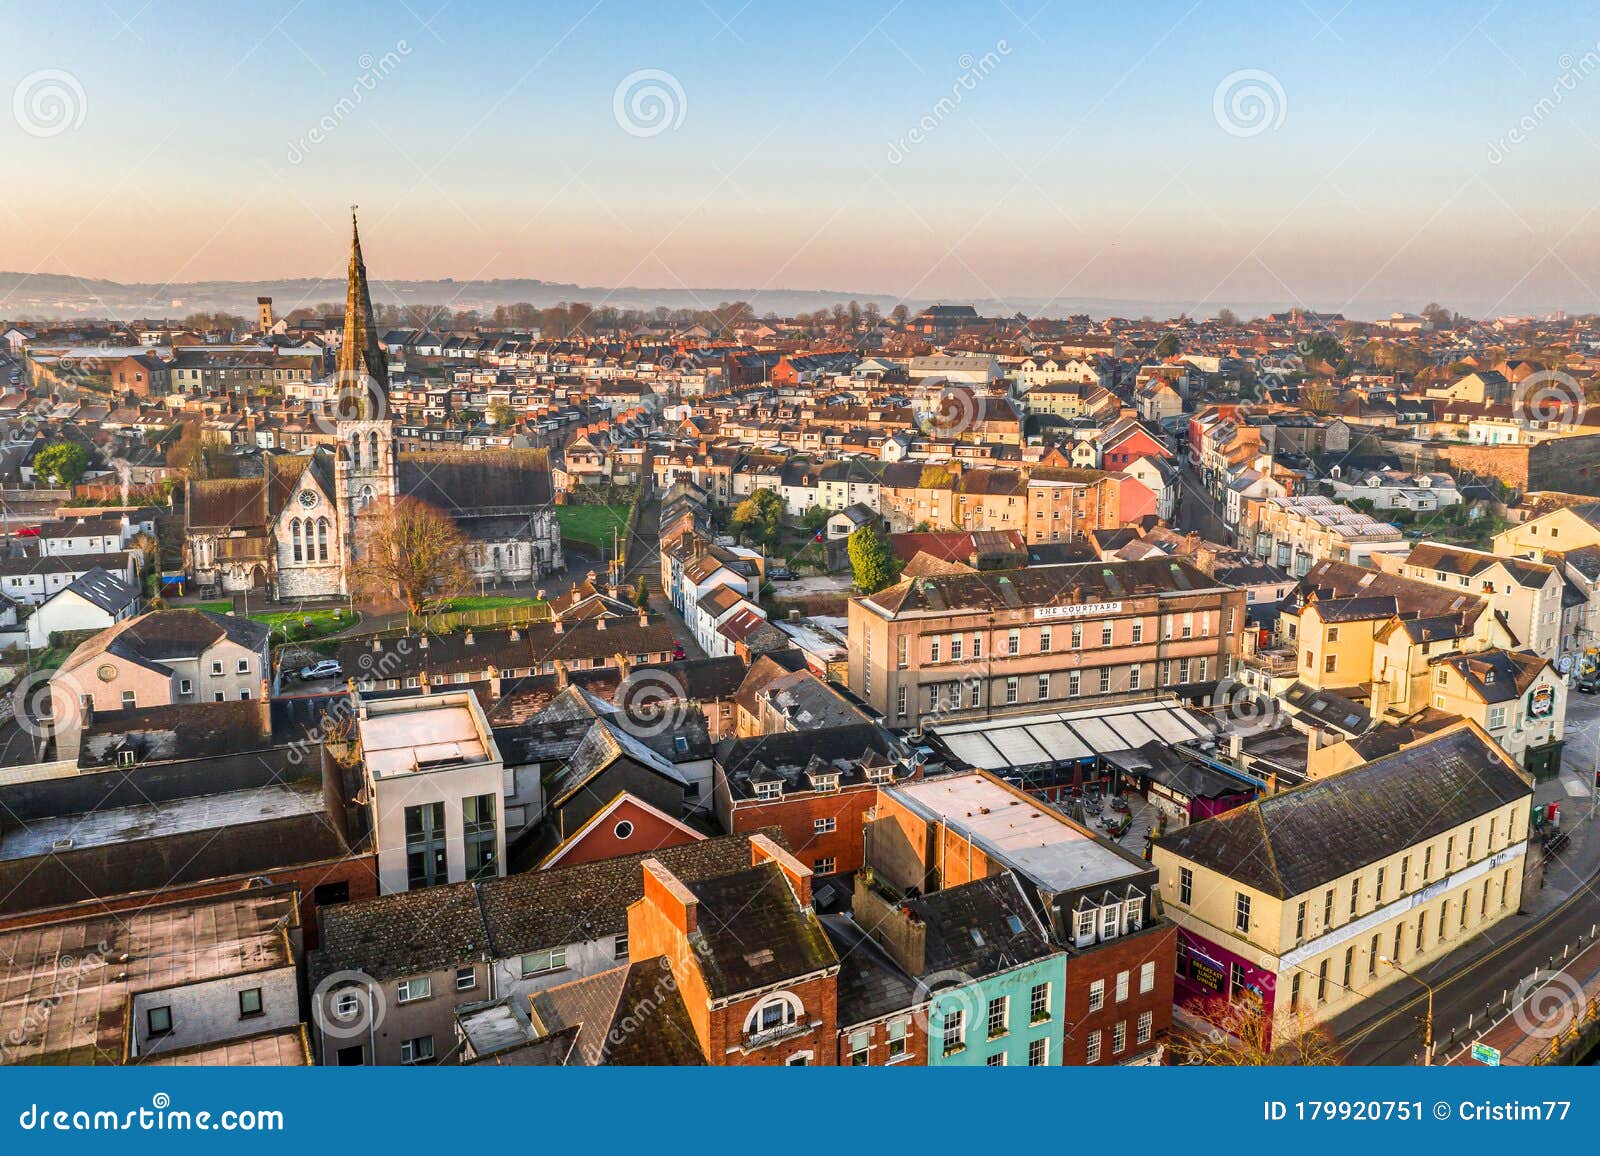 Amazing Aerial View Drone Cork City Center Ireland Irish Landmark ...